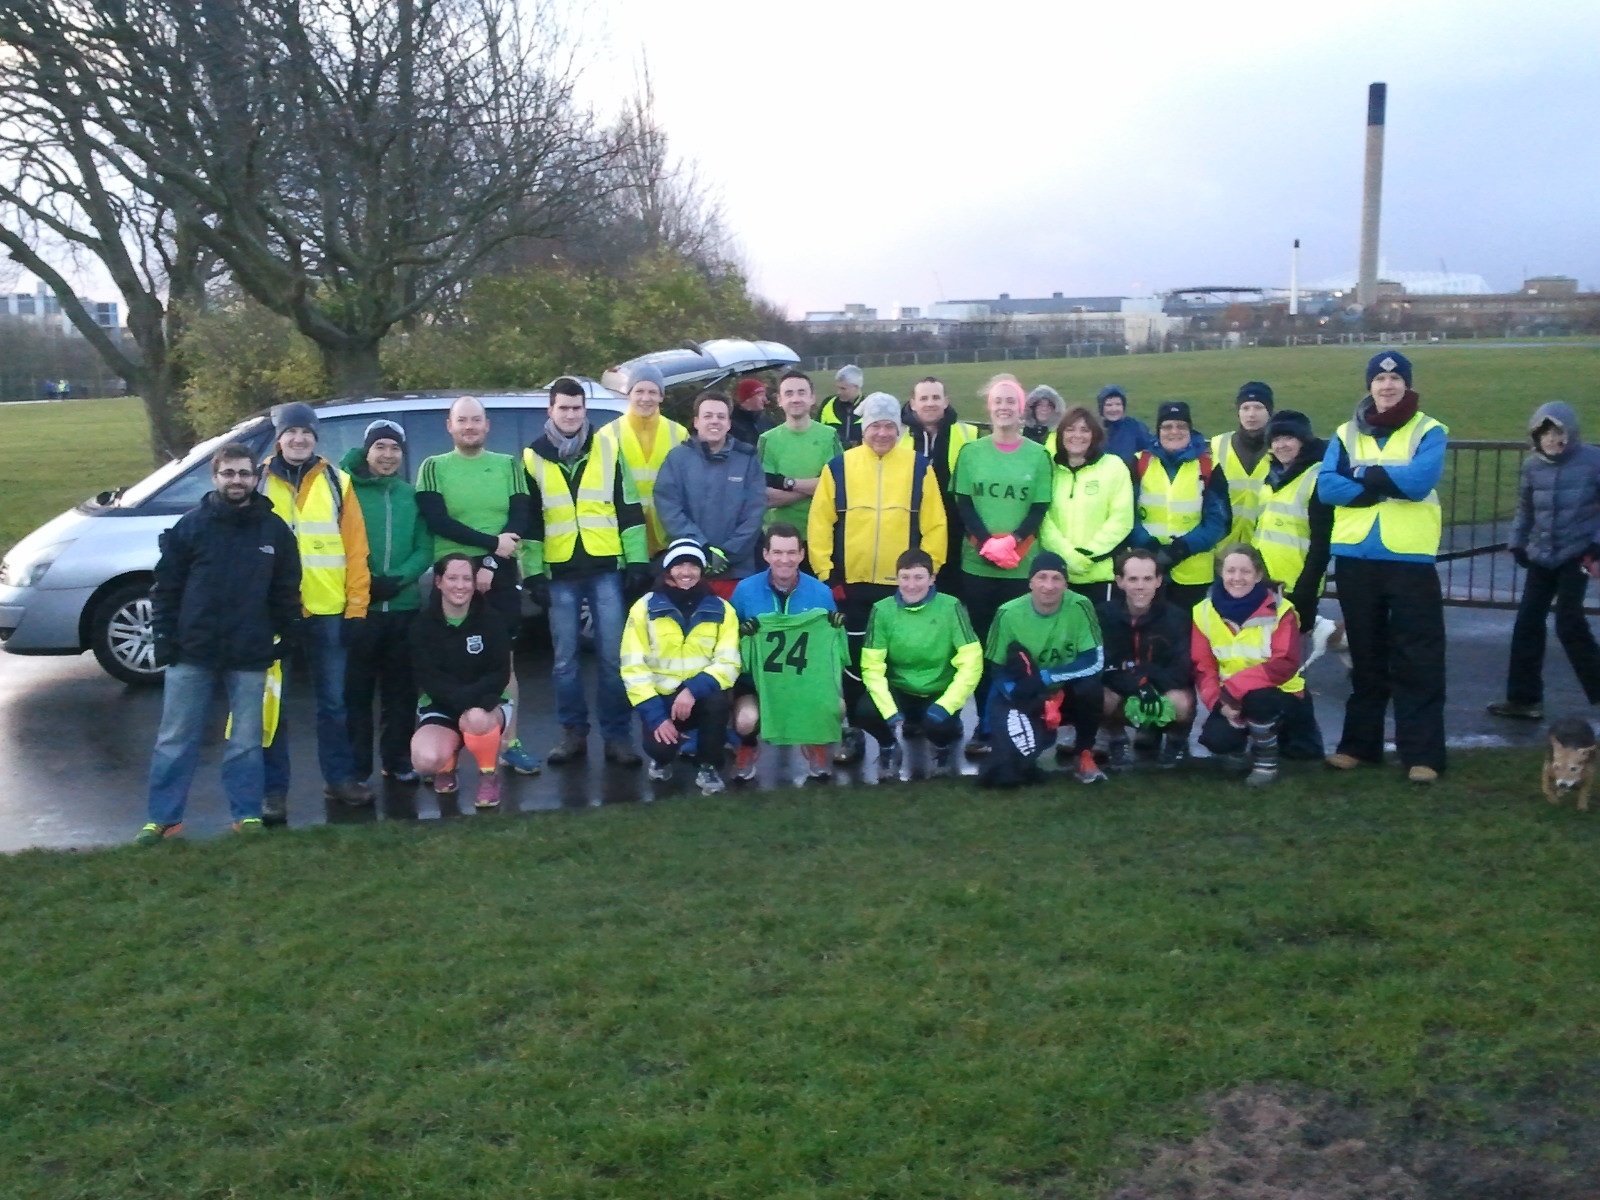 Club members volunteering at Newcastle parkrun.